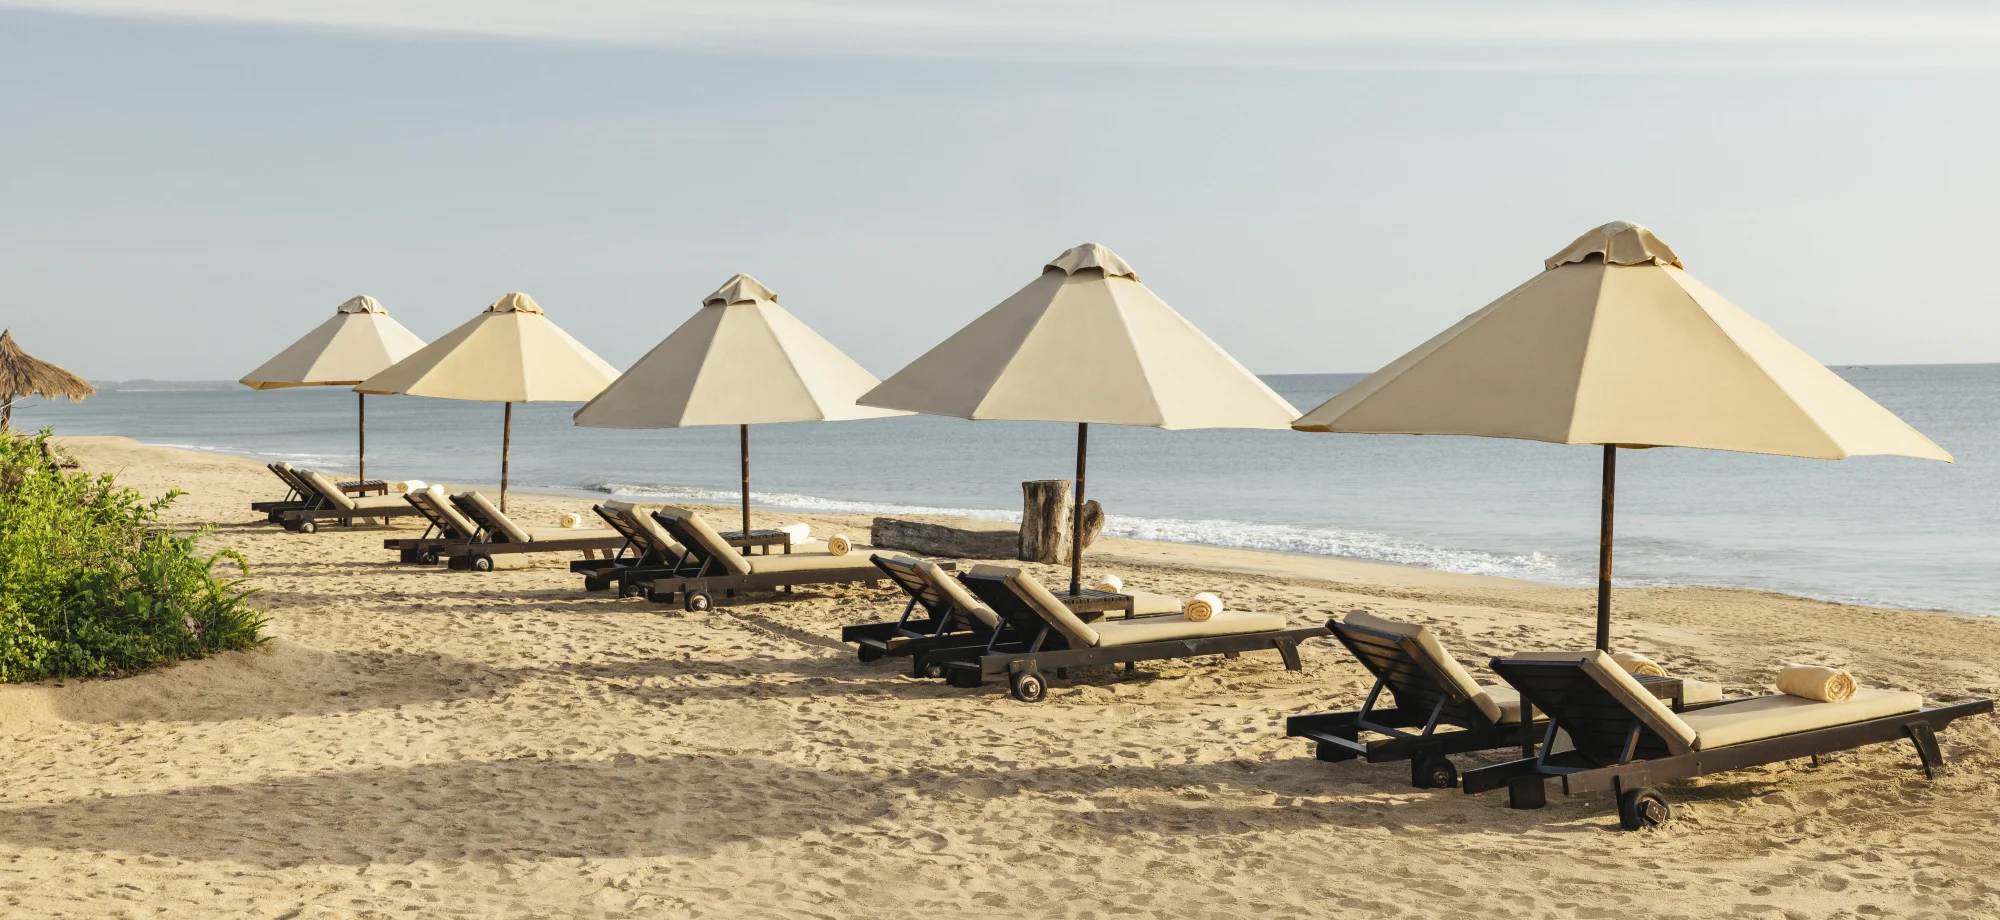 A row of sun loungers face the vast Indian Ocean.